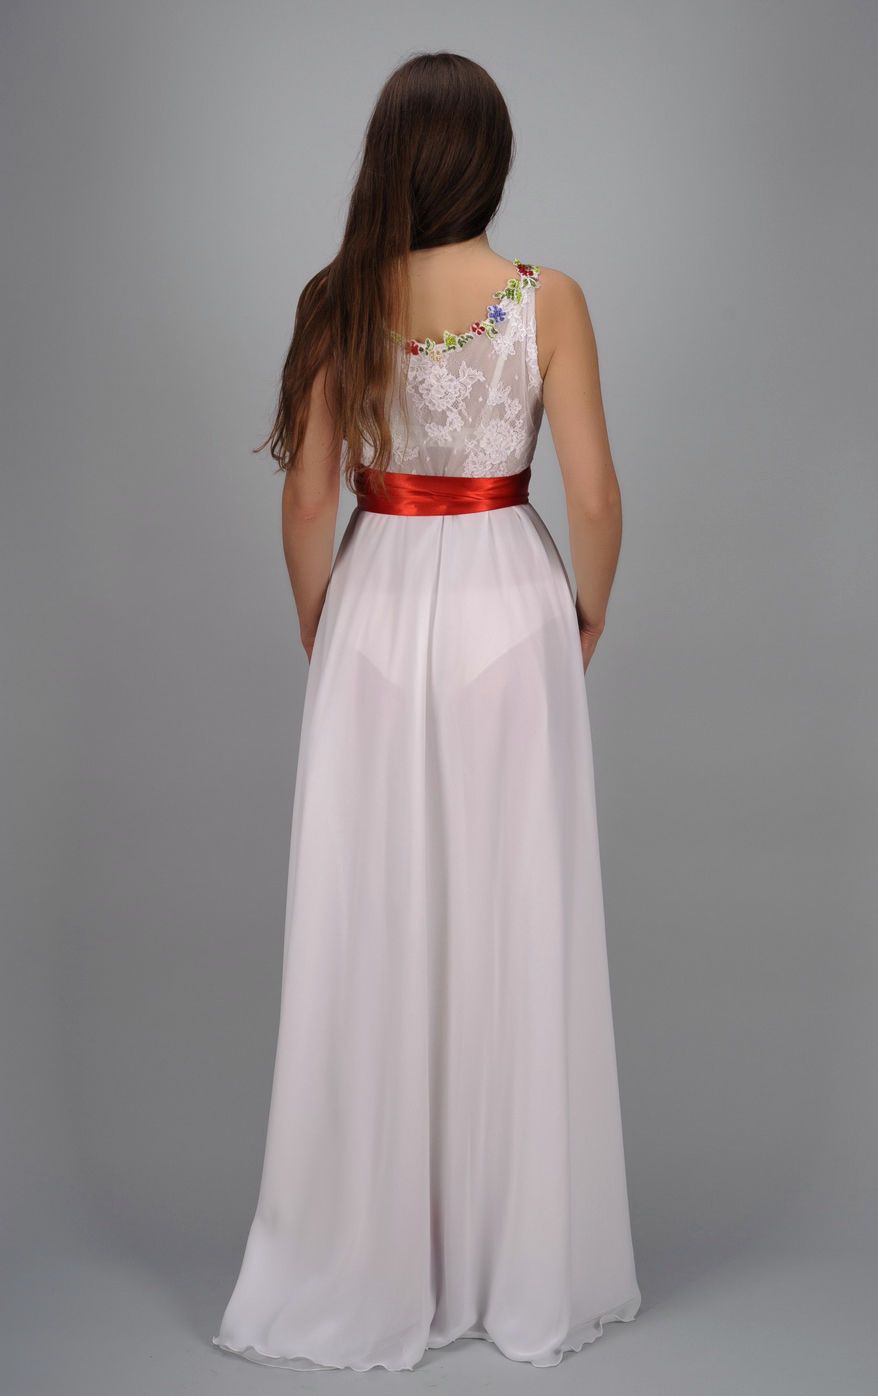 Вечернее платье с бисерной вышивкой фото 3